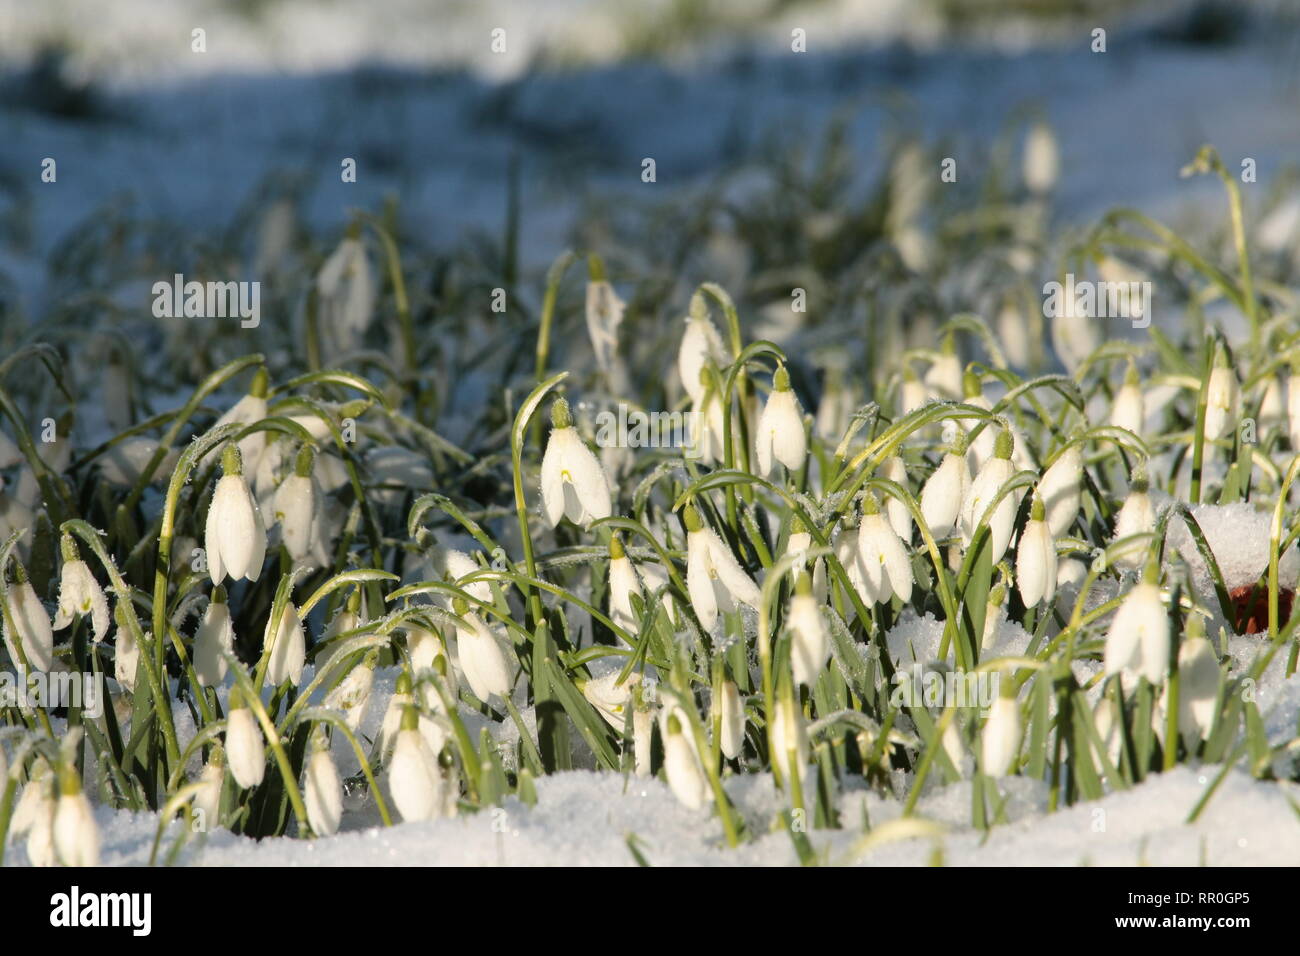 Schneeglöckchen wachsende bei schnee gras aus Augenhöhe im Querformat angezeigt Stockfoto